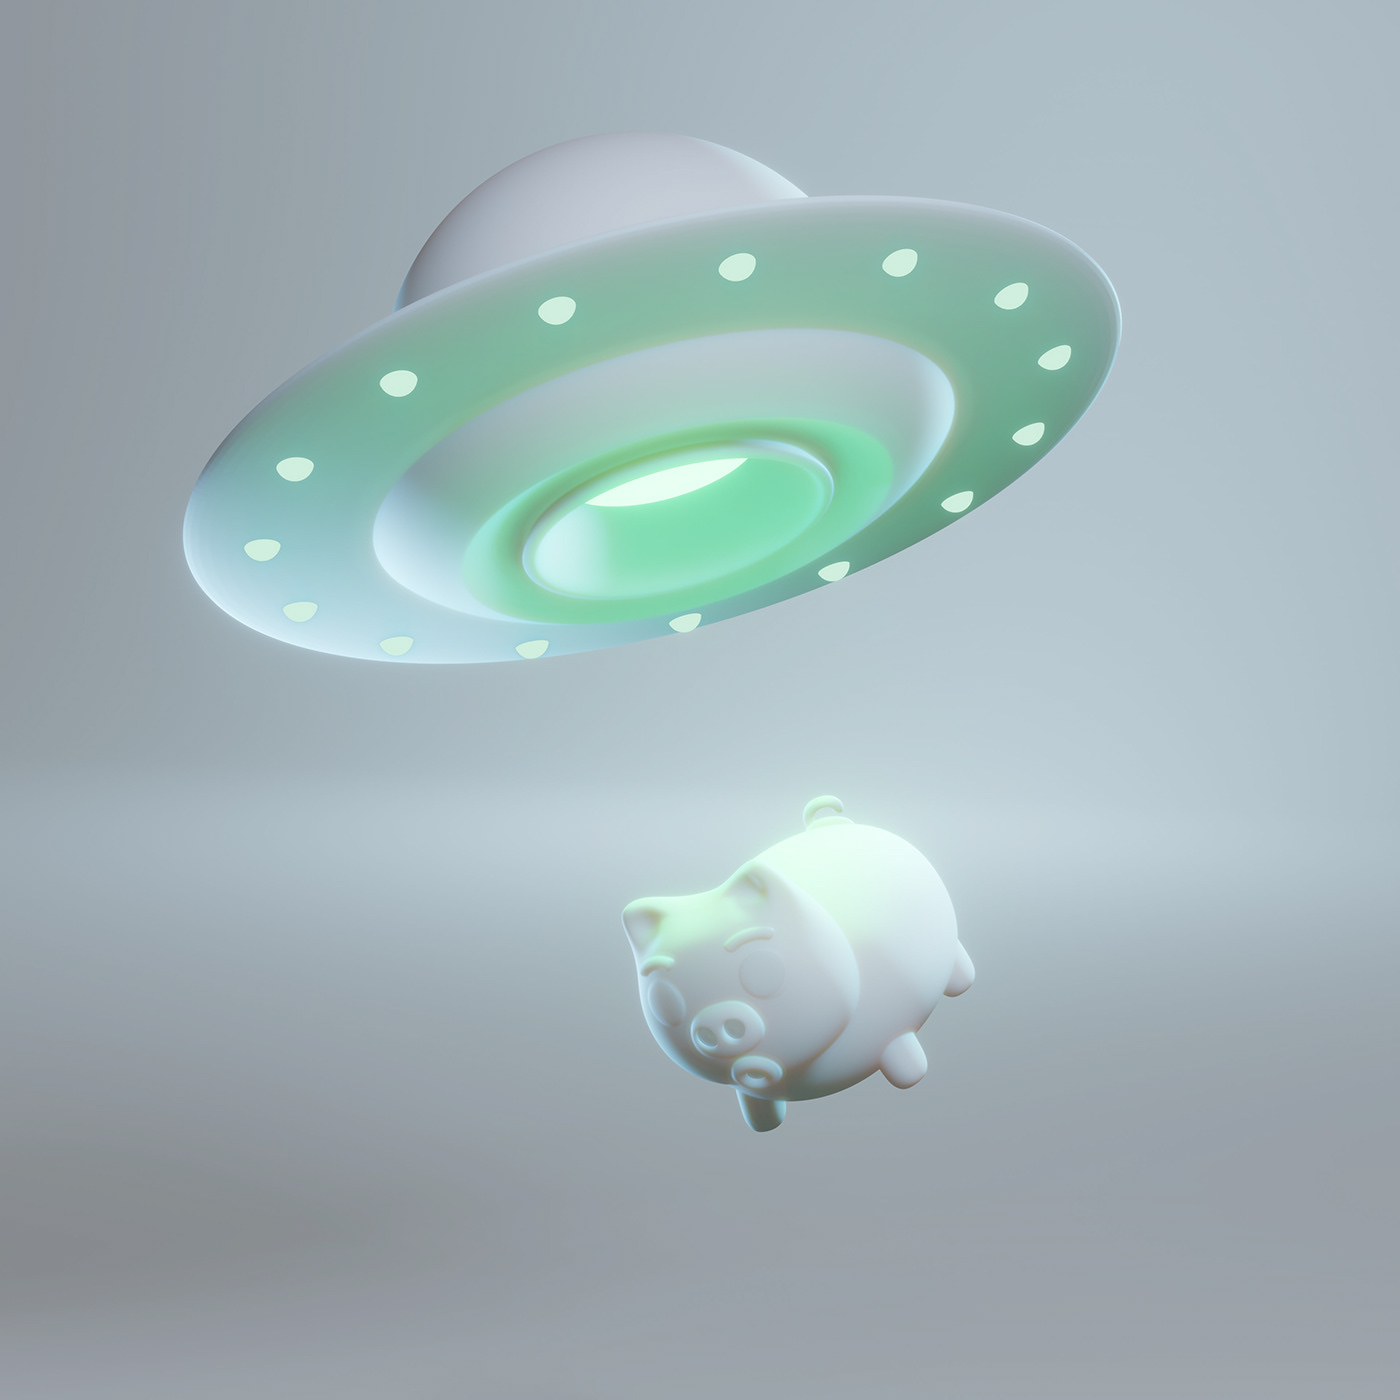 3D 3D illustration ILLUSTRATION  blender Space  pig aliens UFO blender 3d cute